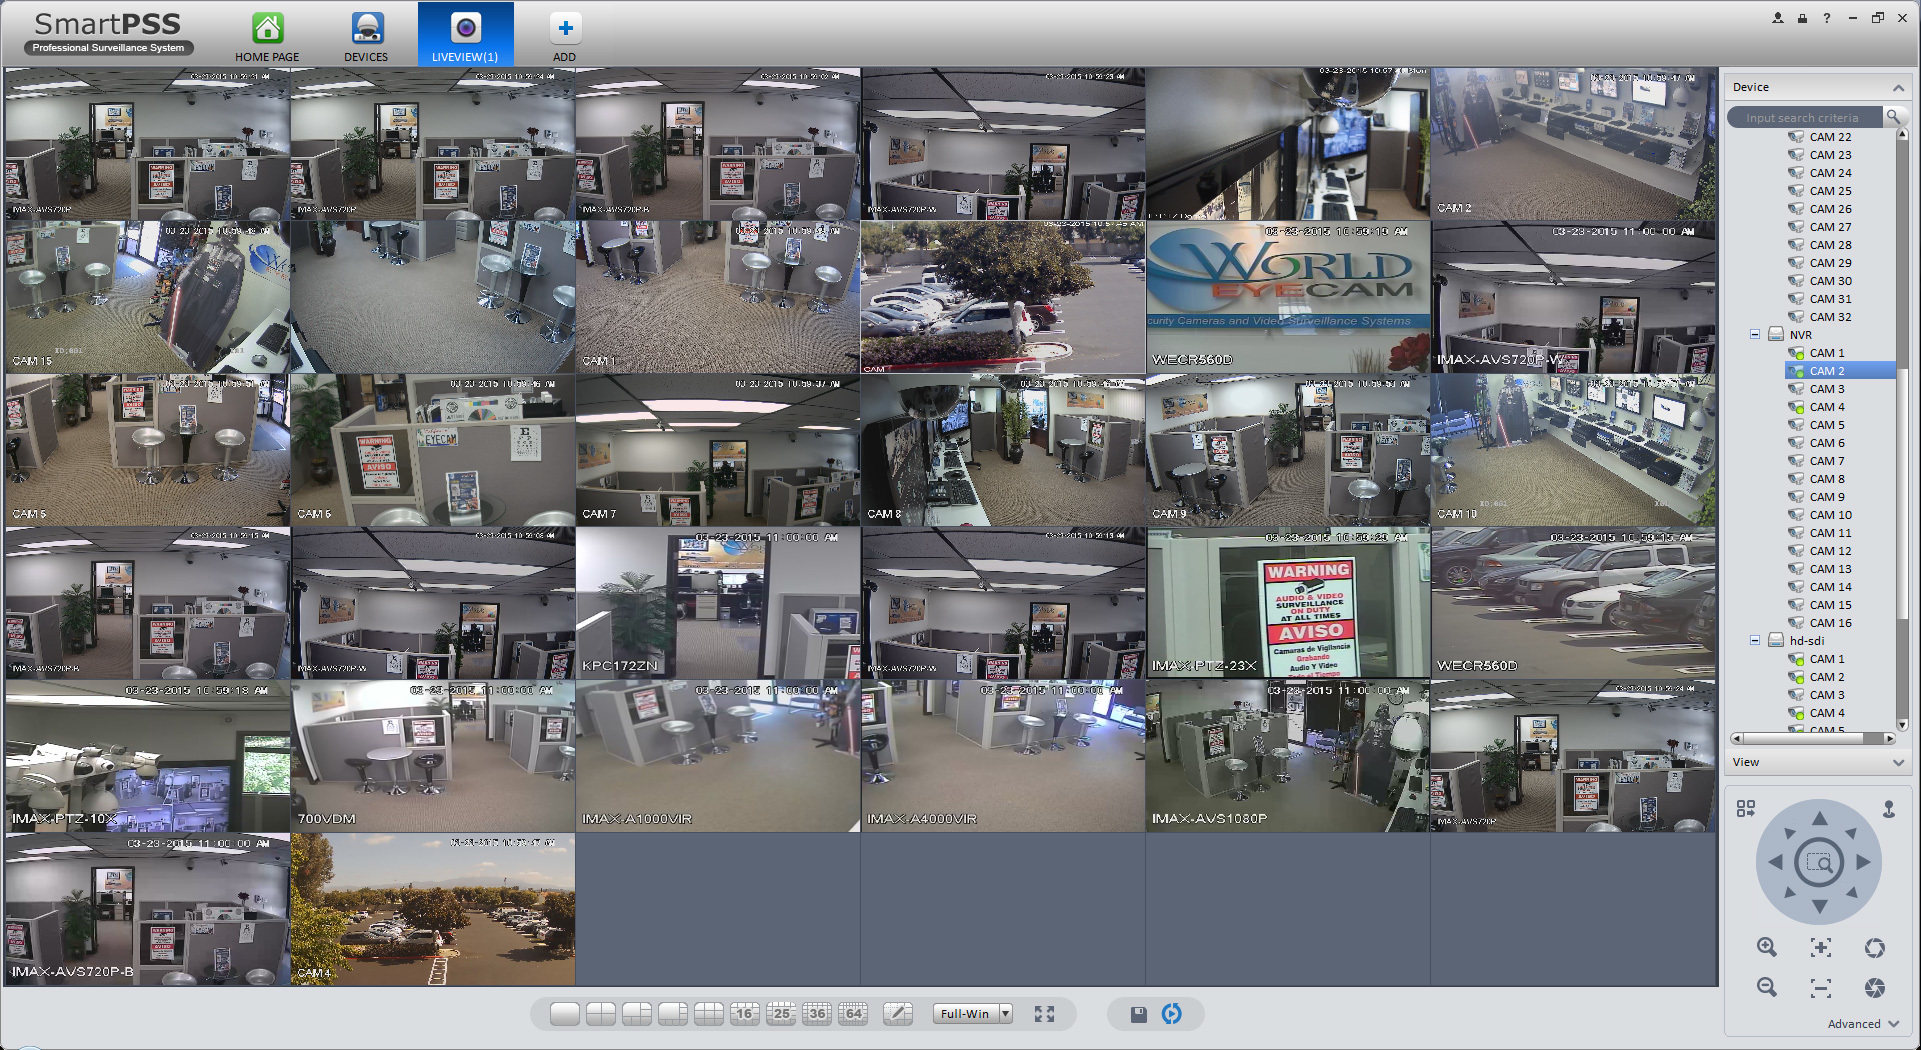 Forums camera. Smart PSS видеонаблюдение. Взломанные IP камеры видеонаблюдения. Название камер в Smart PSS. SMARTPSS хэш камеры.